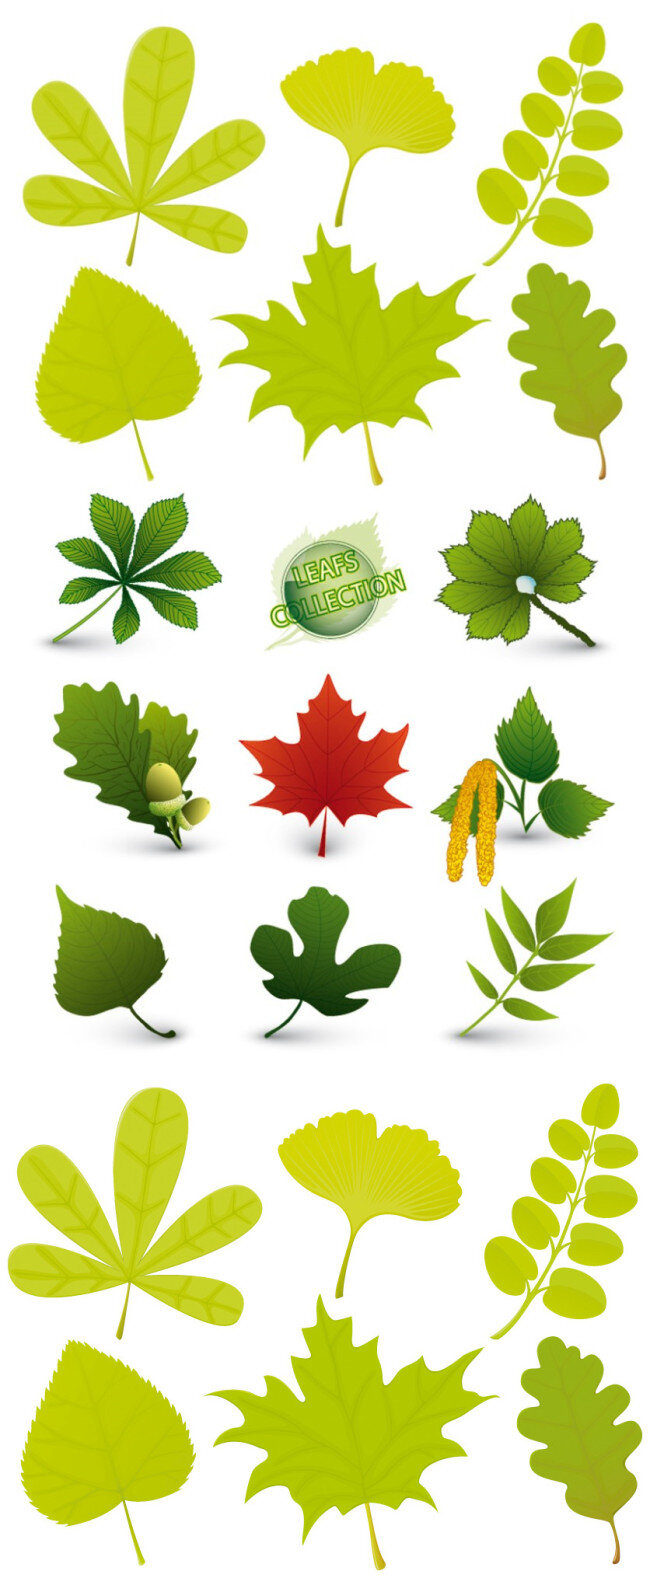 不同 植物 叶子 矢量图 树叶 枫叶 春天 秋天 绿色 书签 标签 环保 白色